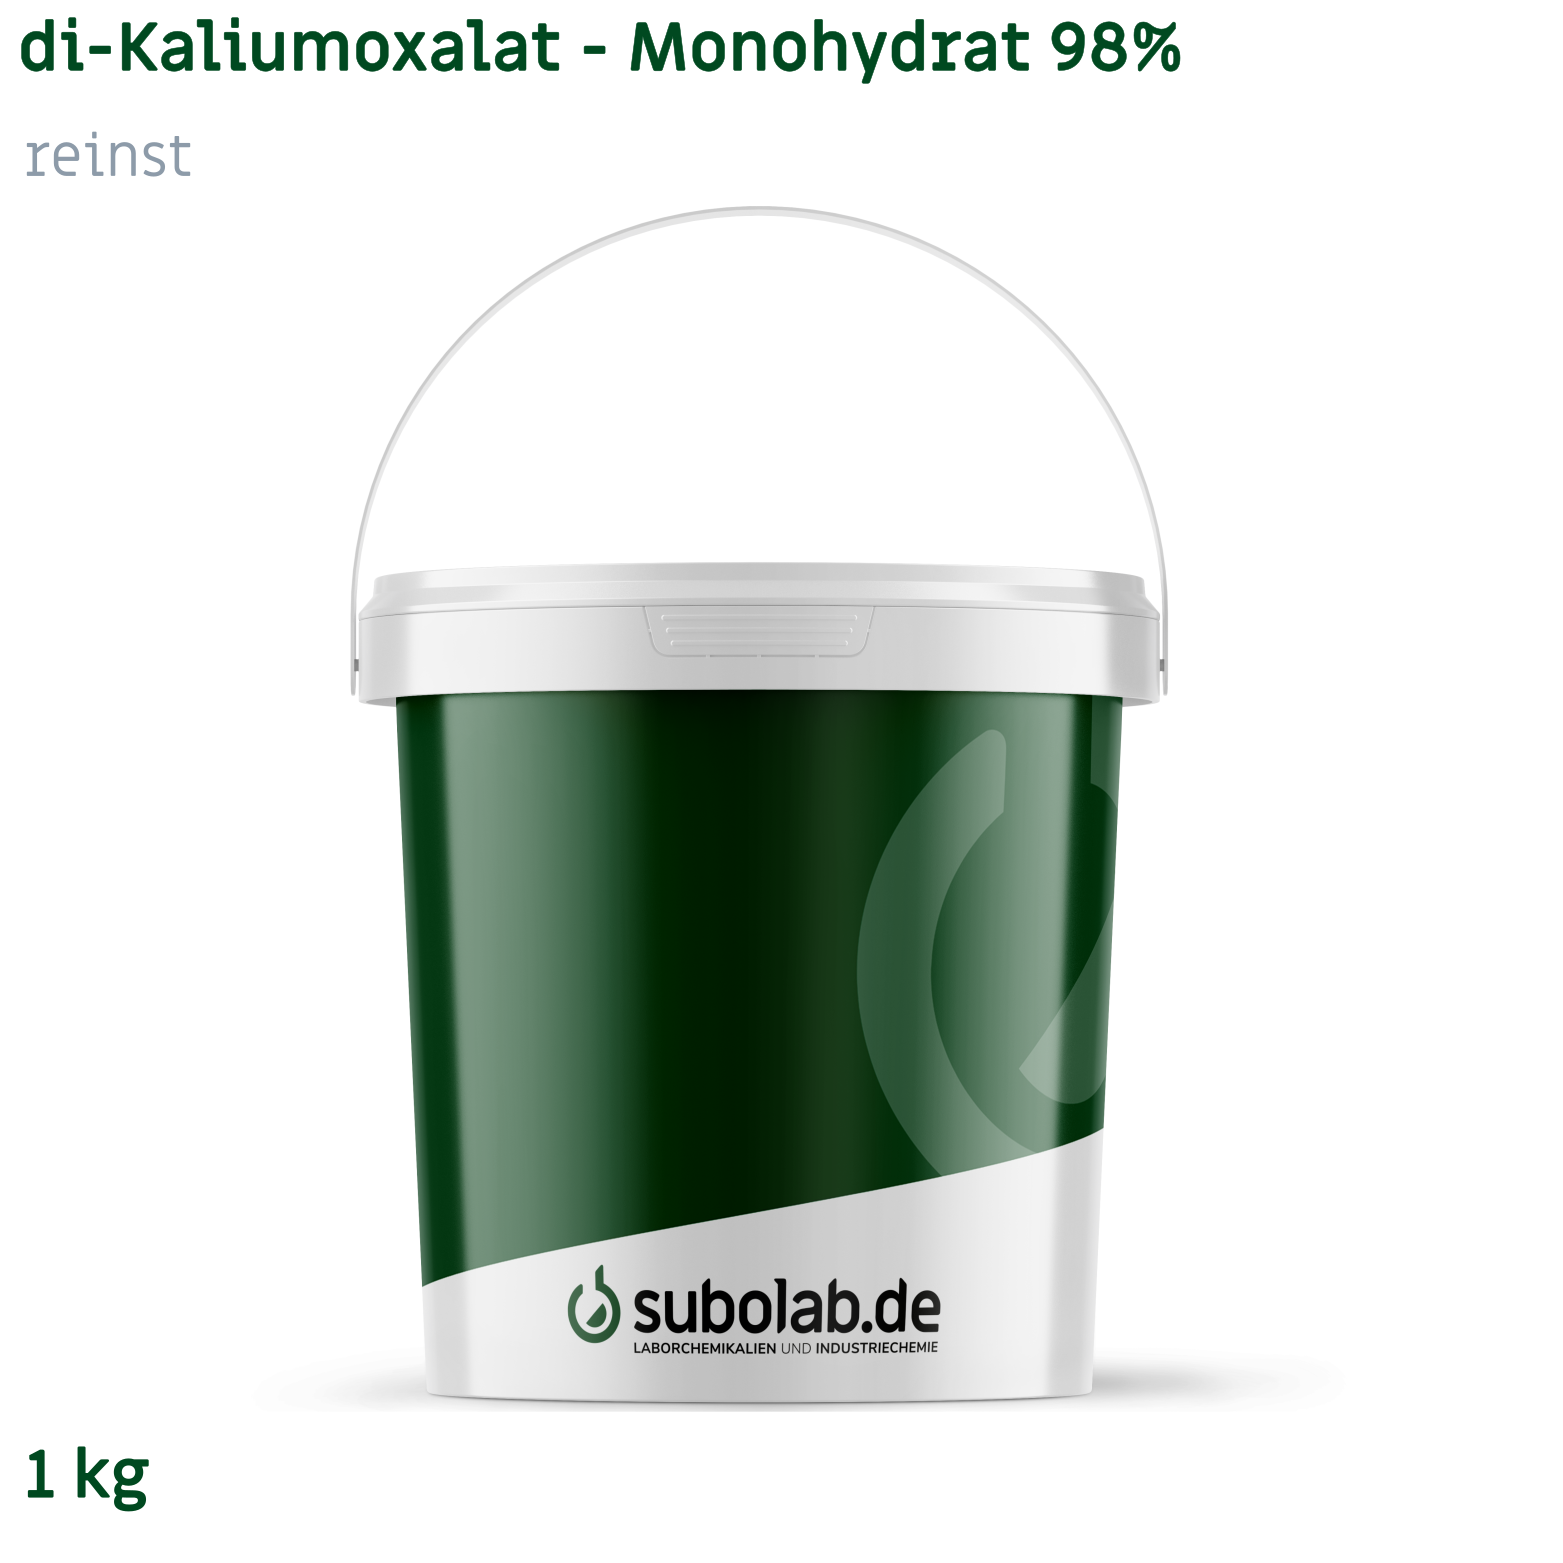 Bild von di-Kaliumoxalat - Monohydrat 98% reinst (1 kg)